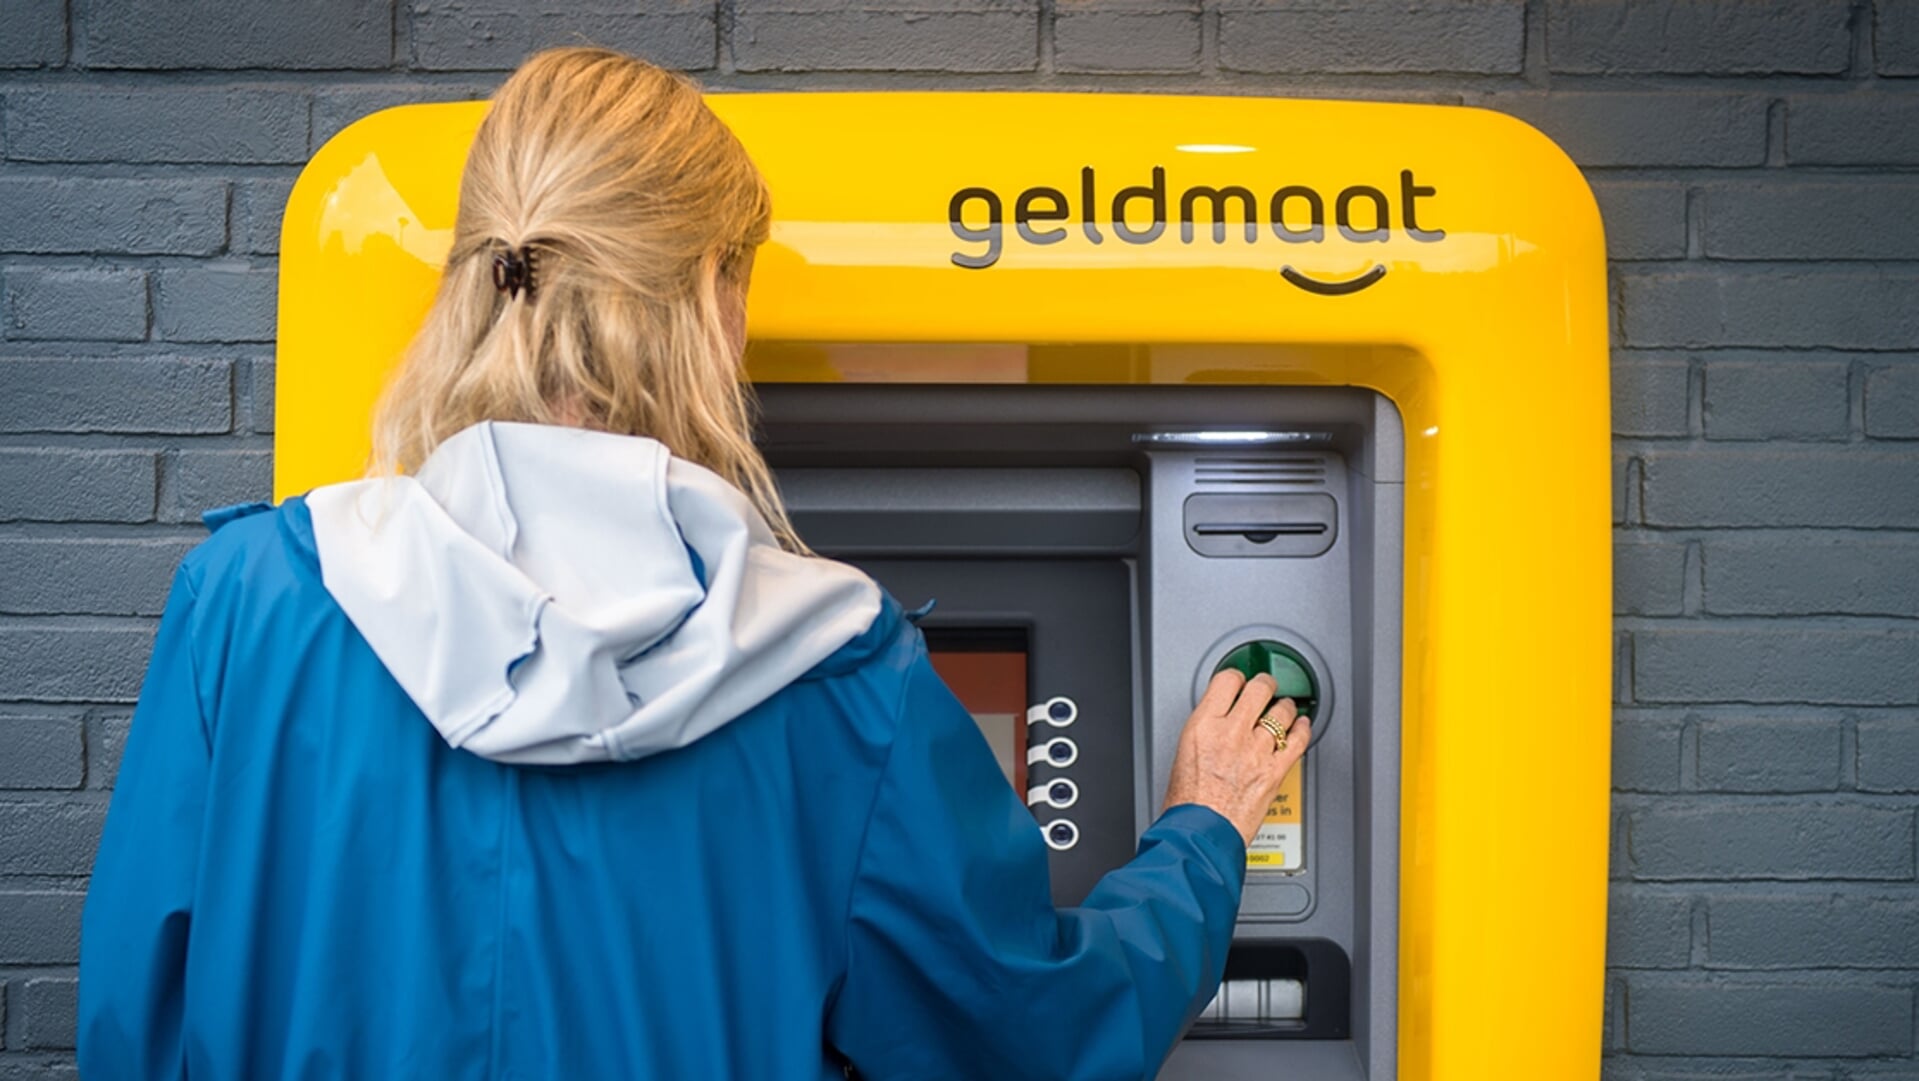 Verplaatsbaar Integraal Afleiden Pinnen in Uitgeest: waar vind je de pinautomaten? | Al het nieuws uit  Uitgeest